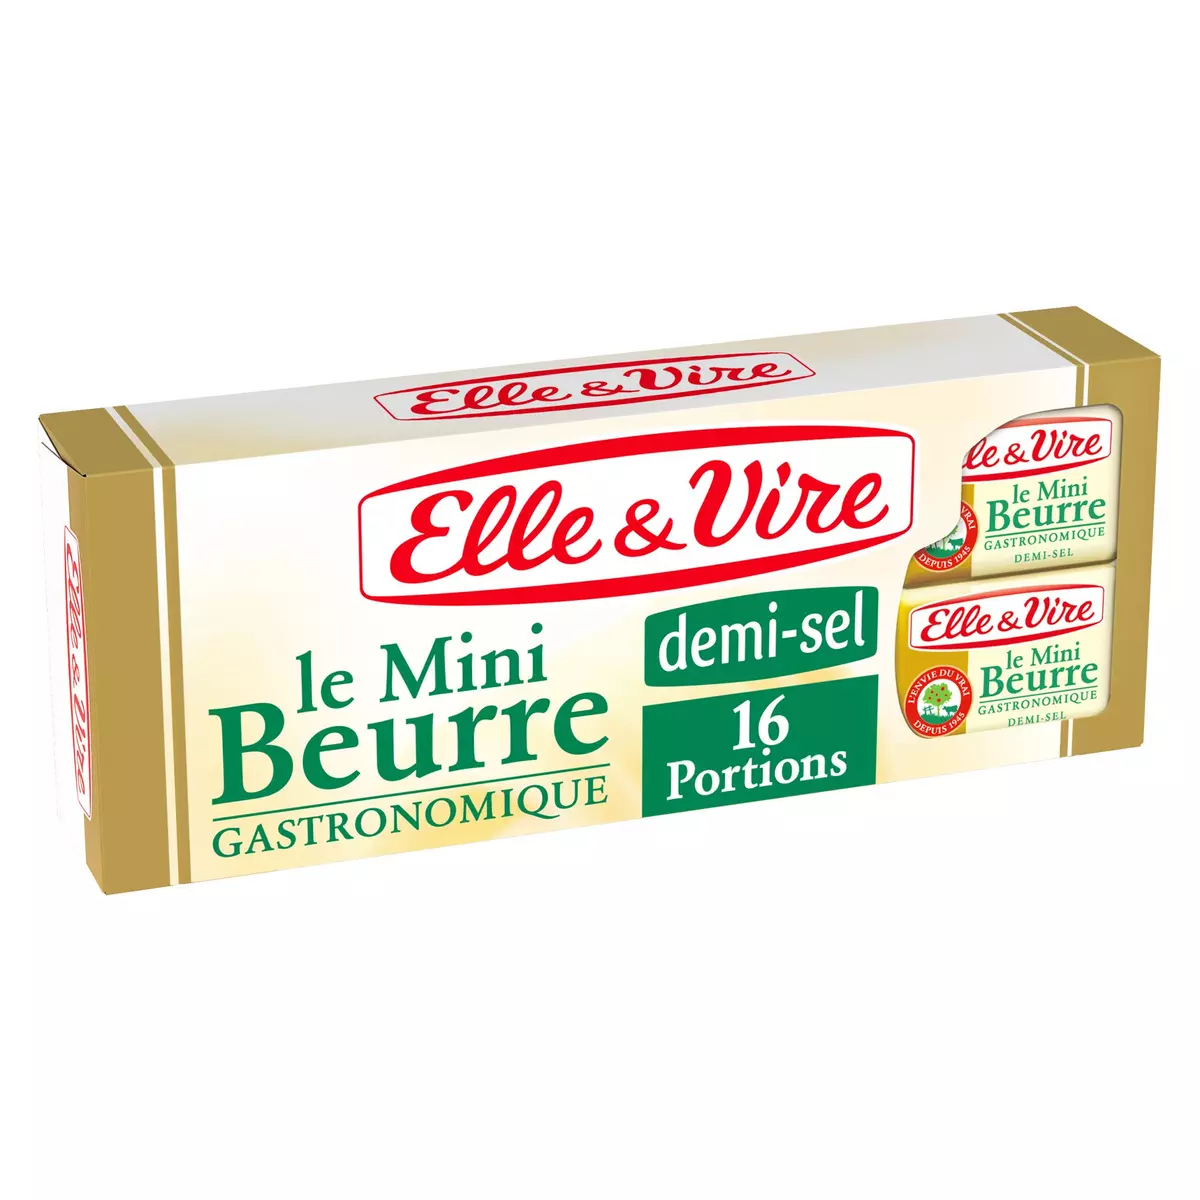 ELLE & VIRE Mini-beurre demi-sel gastronomique 16 portions 200g